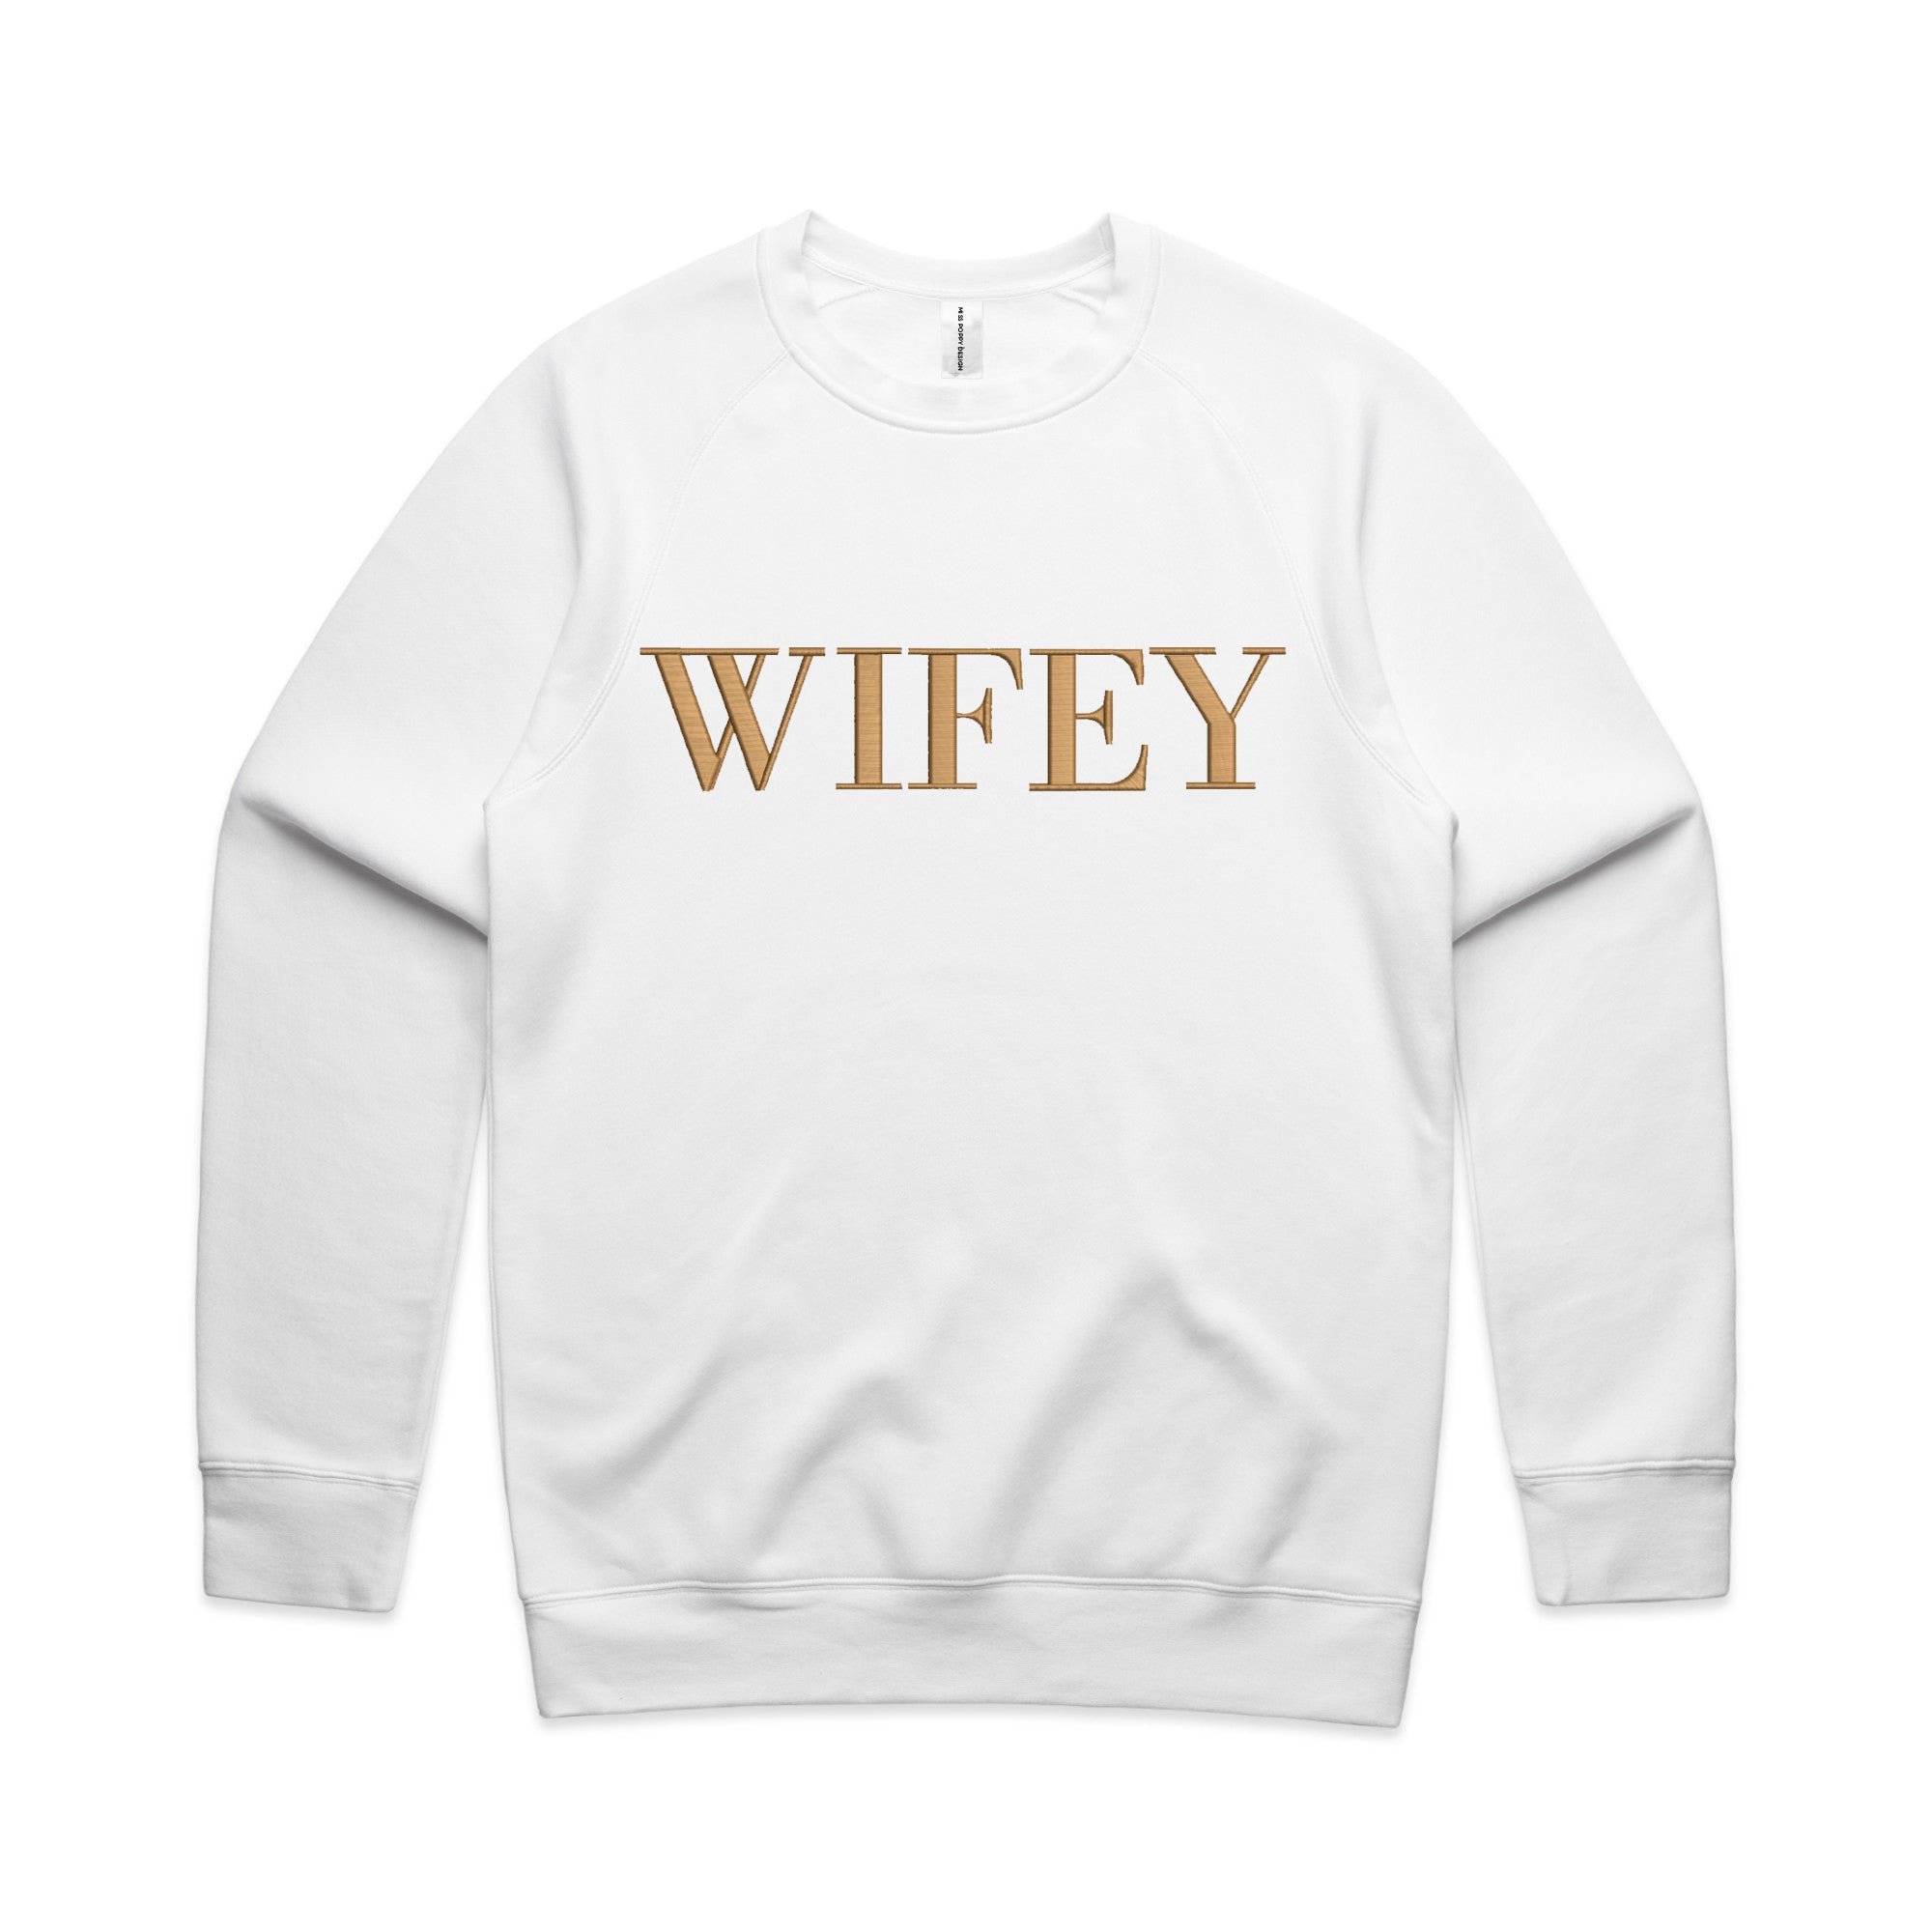 Wifey Loungewear Sweater